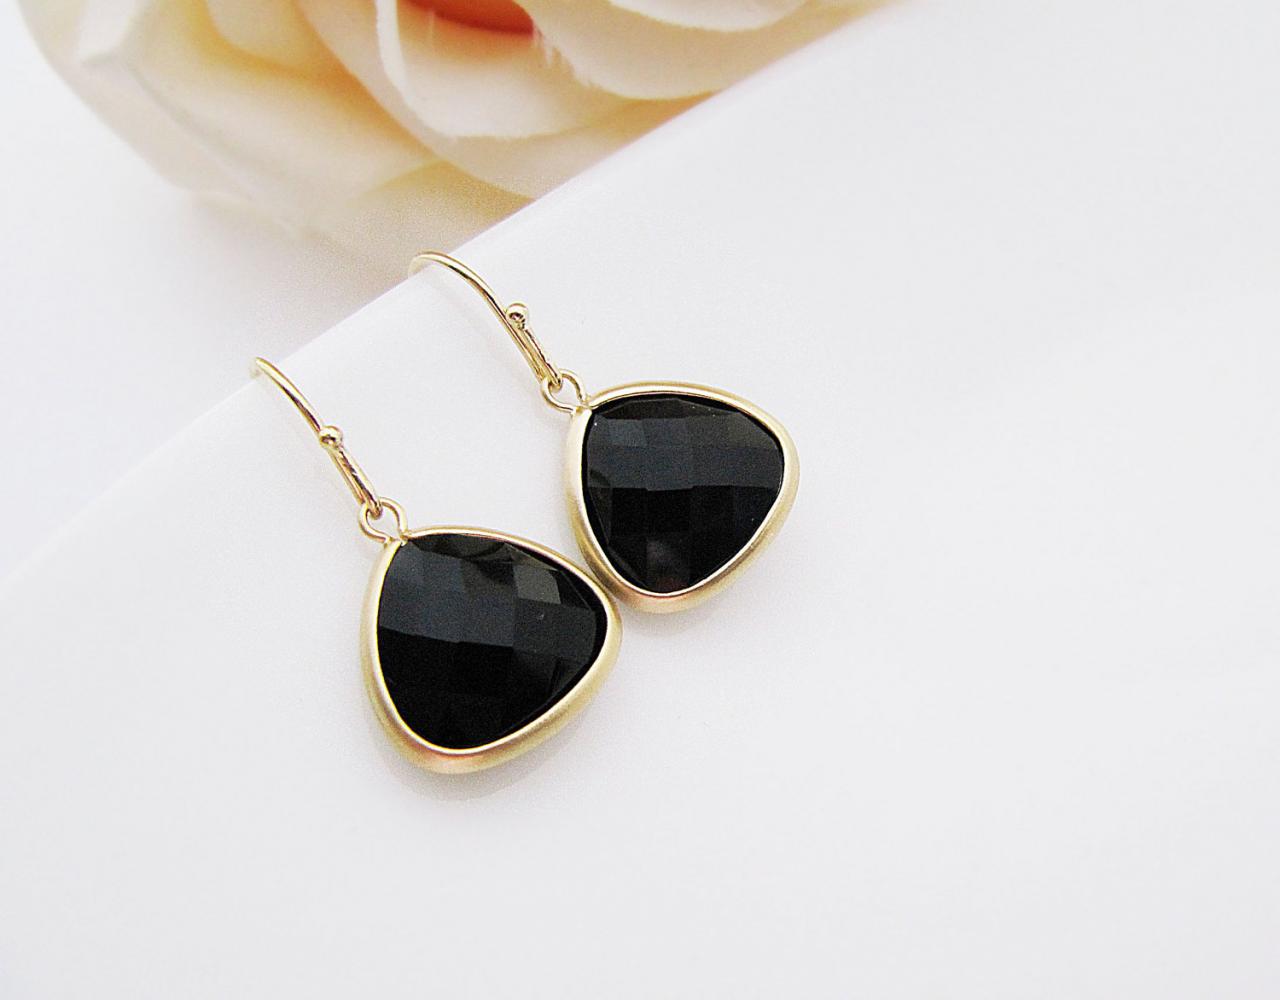 Matte Gold Trimmed Black Onyx Gemstone Earrings - Bridal Earrings Bridesmaid Earrings